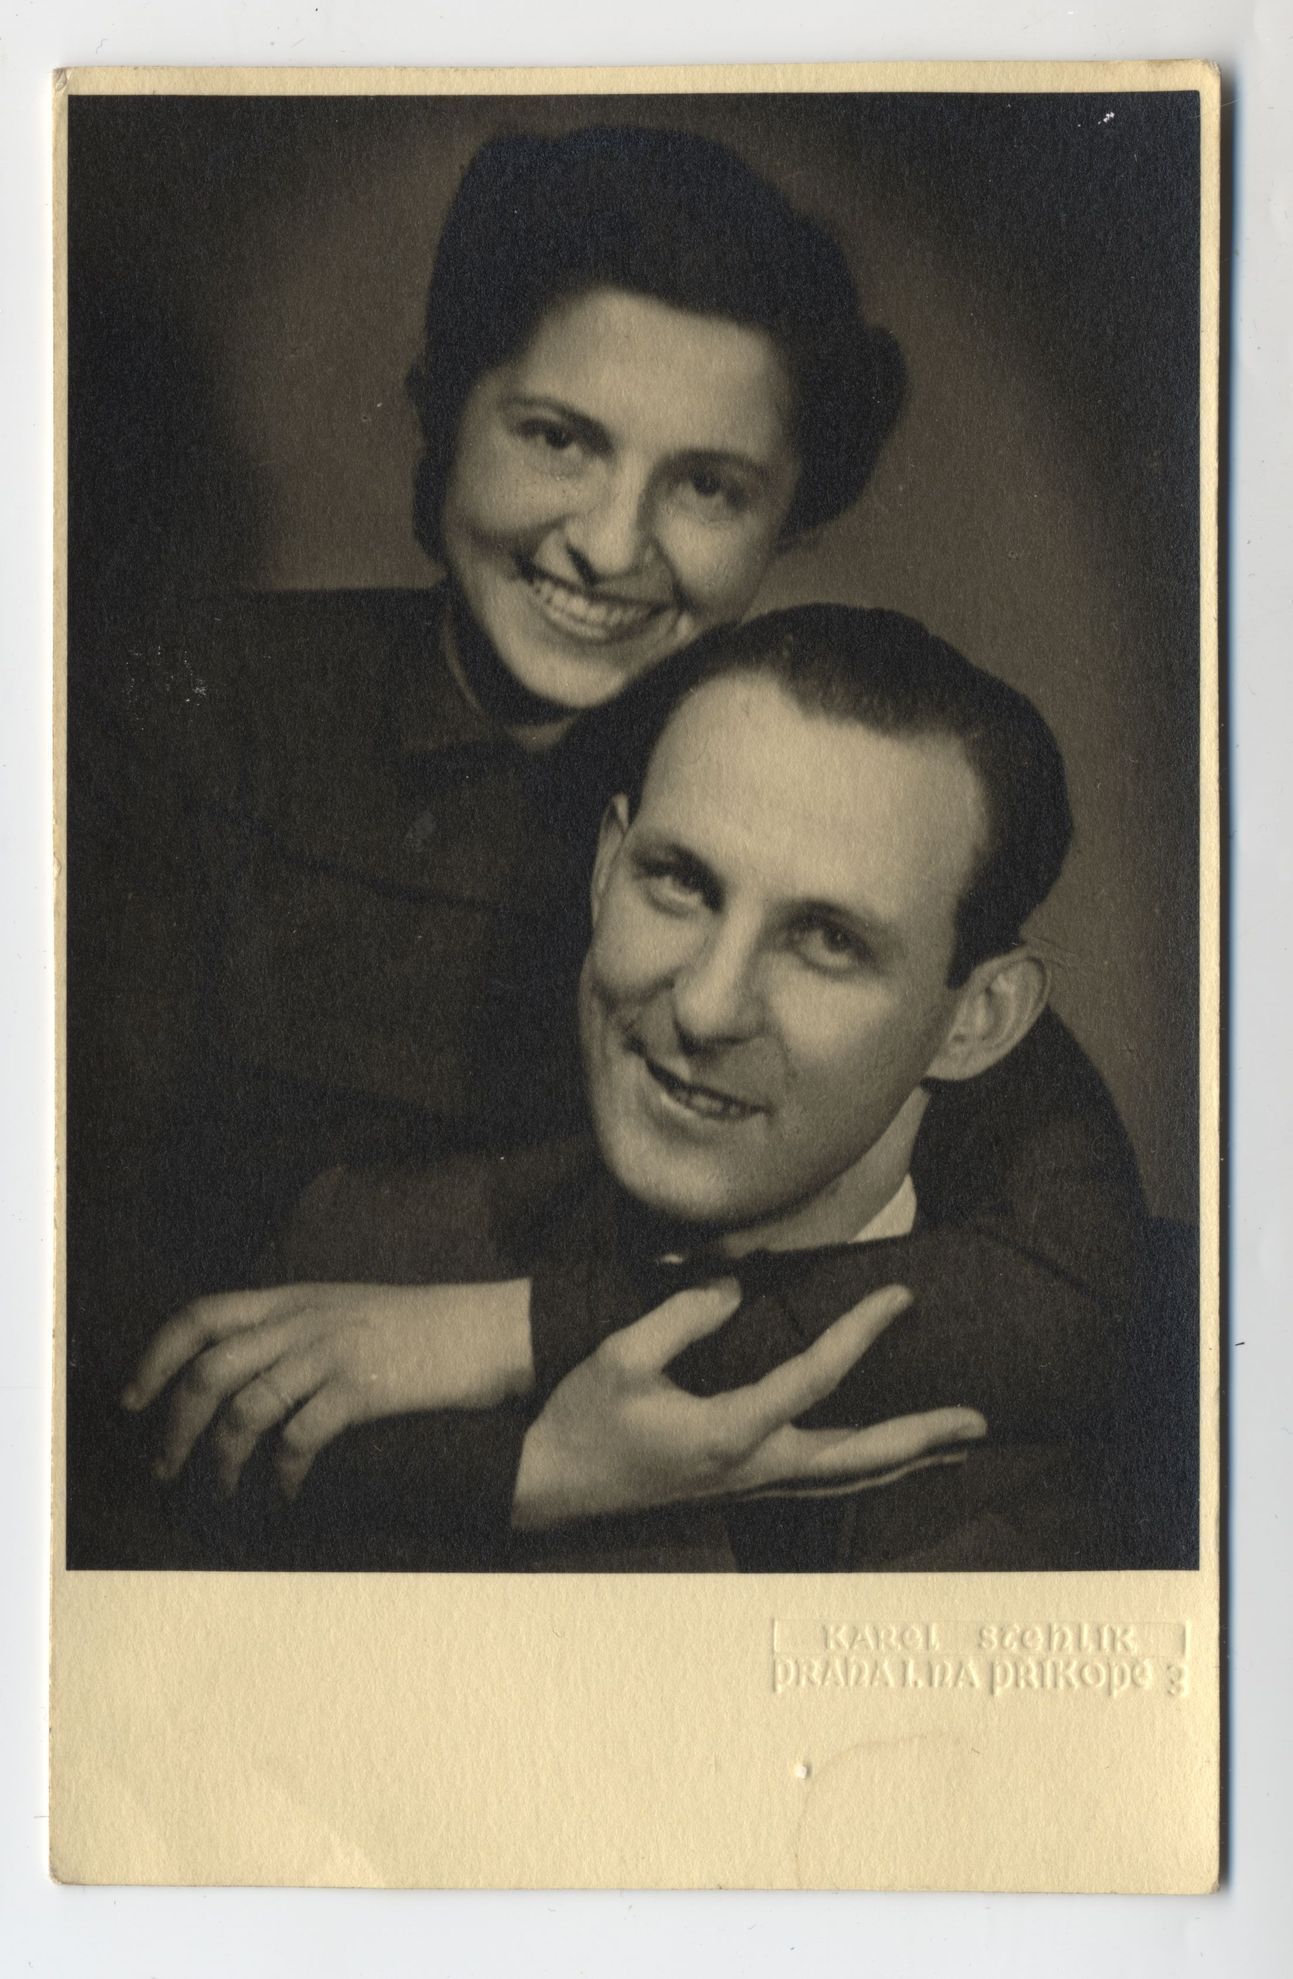 Lída & Zika Ascherovi krátce před svatbou, 1939